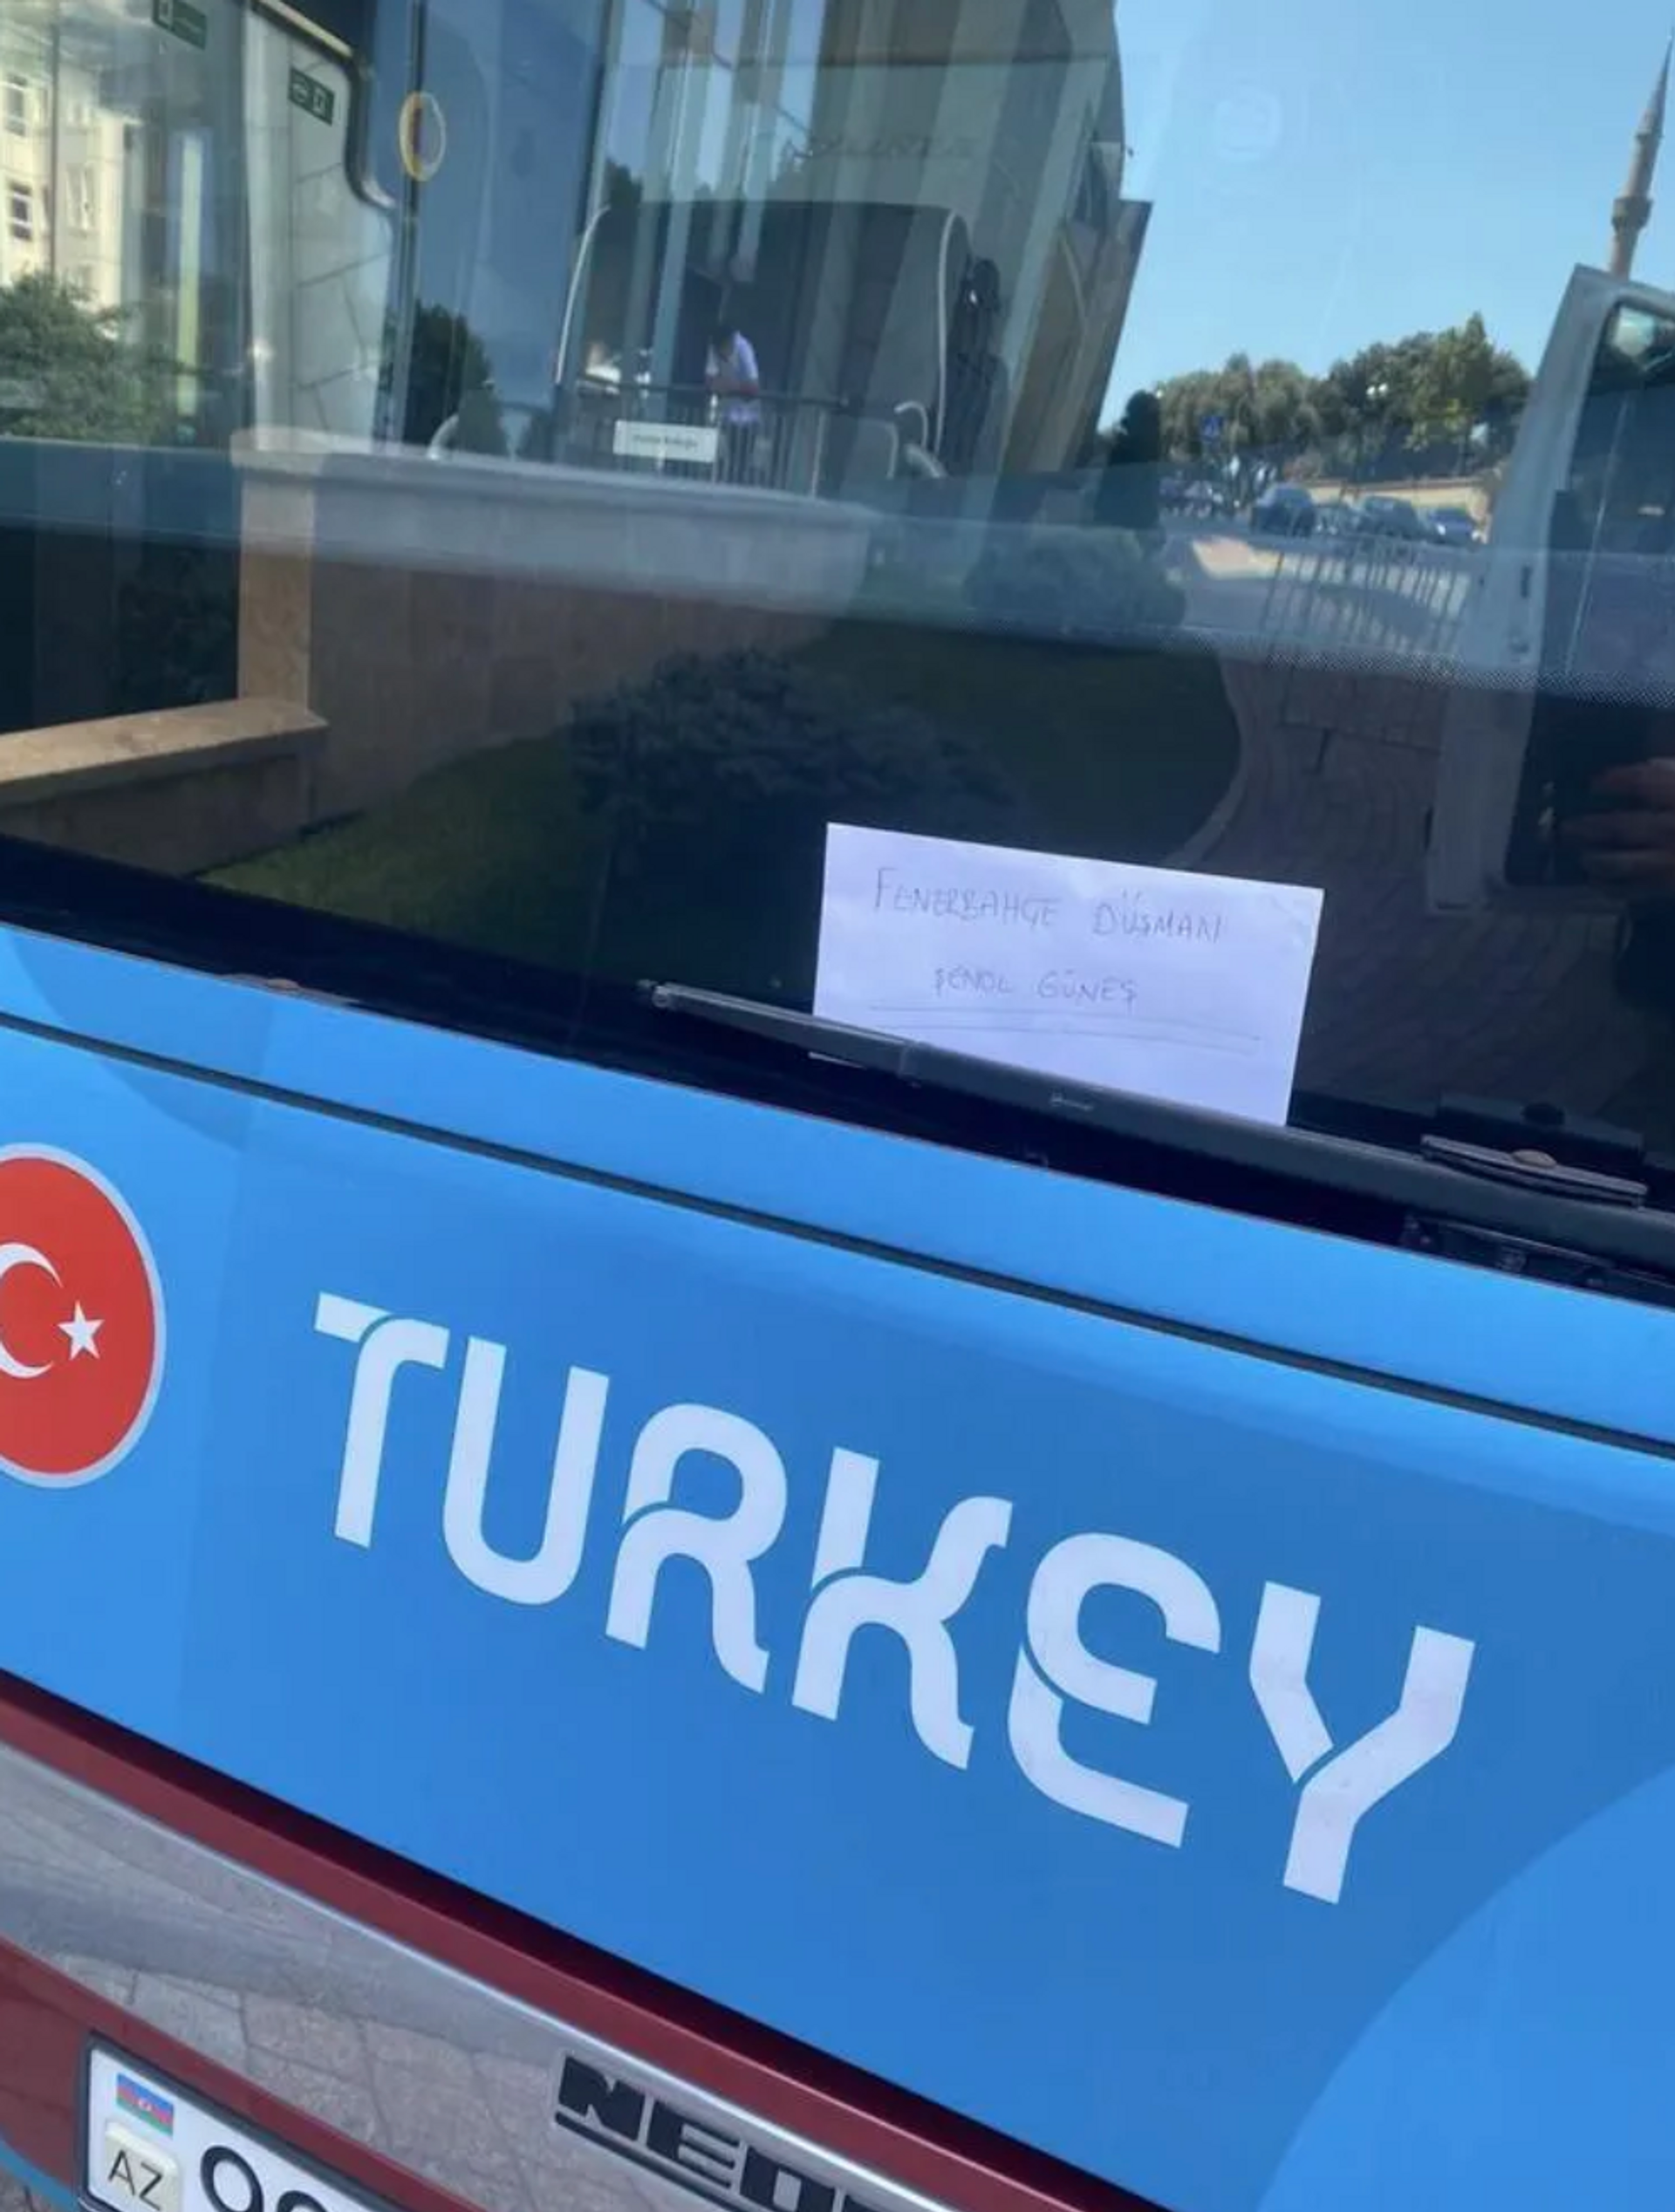 Otobüsün ön camına konulan kağıtta Fenerbahçe düşmanı Şenol Güneş yazdığı görüldü. - Sputnik Türkiye, 1920, 10.08.2021